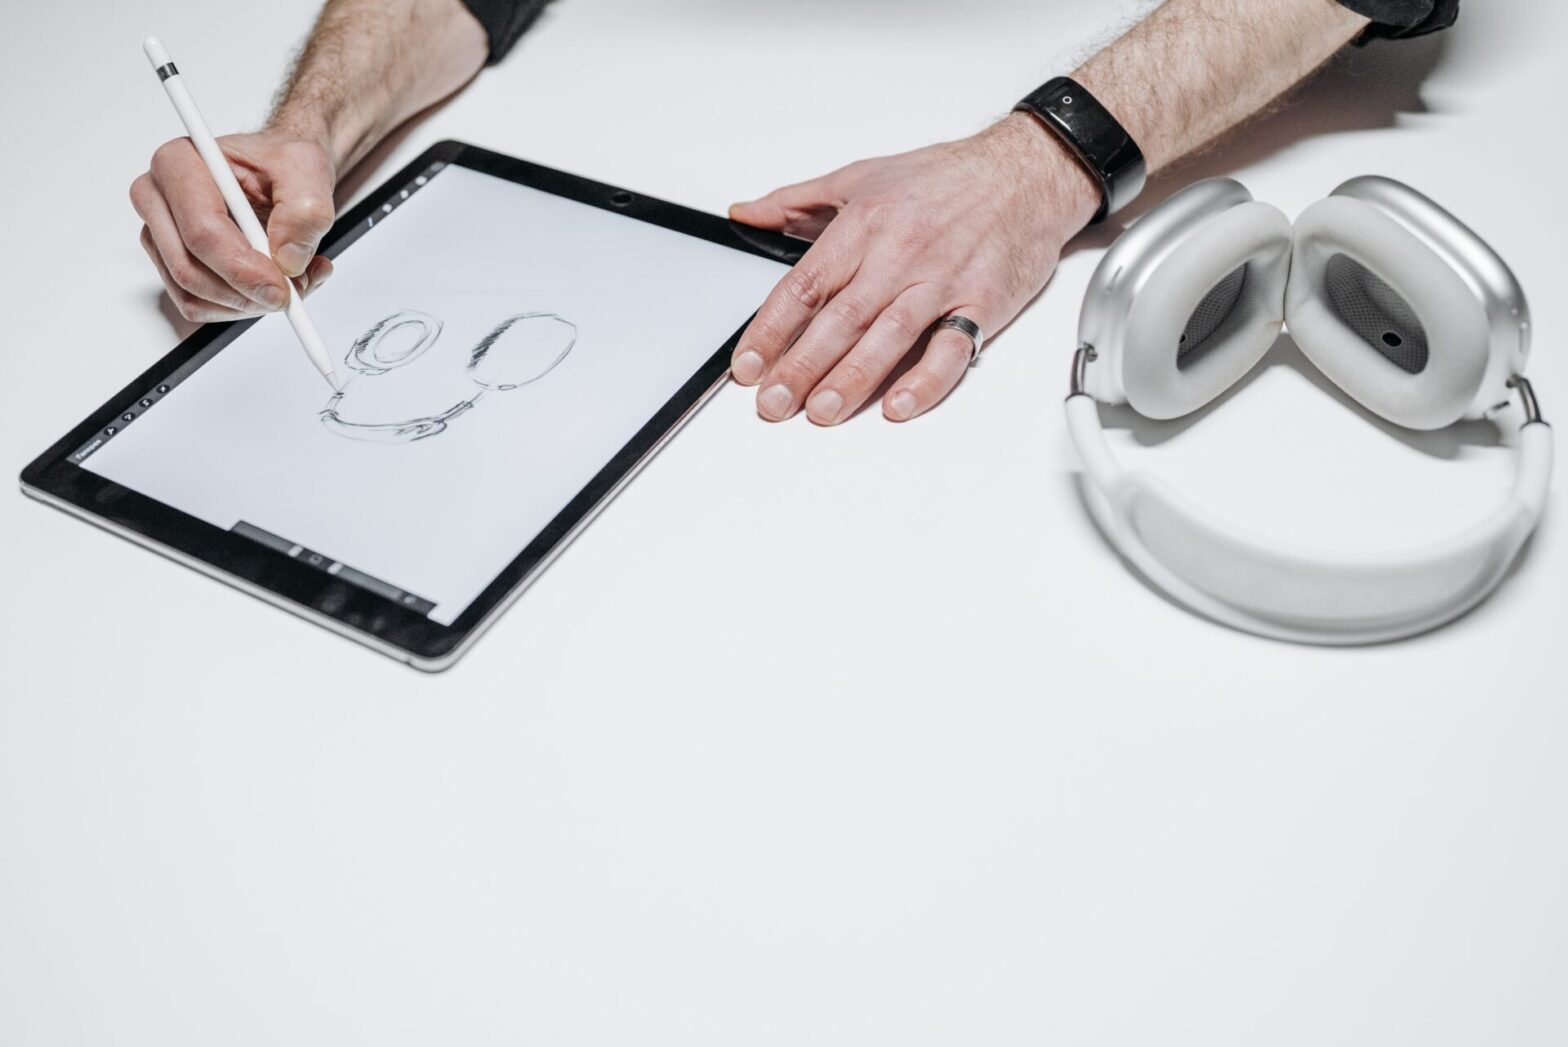 iPad Air : Darty dégomme le prix de la célèbre tablette tactile Apple